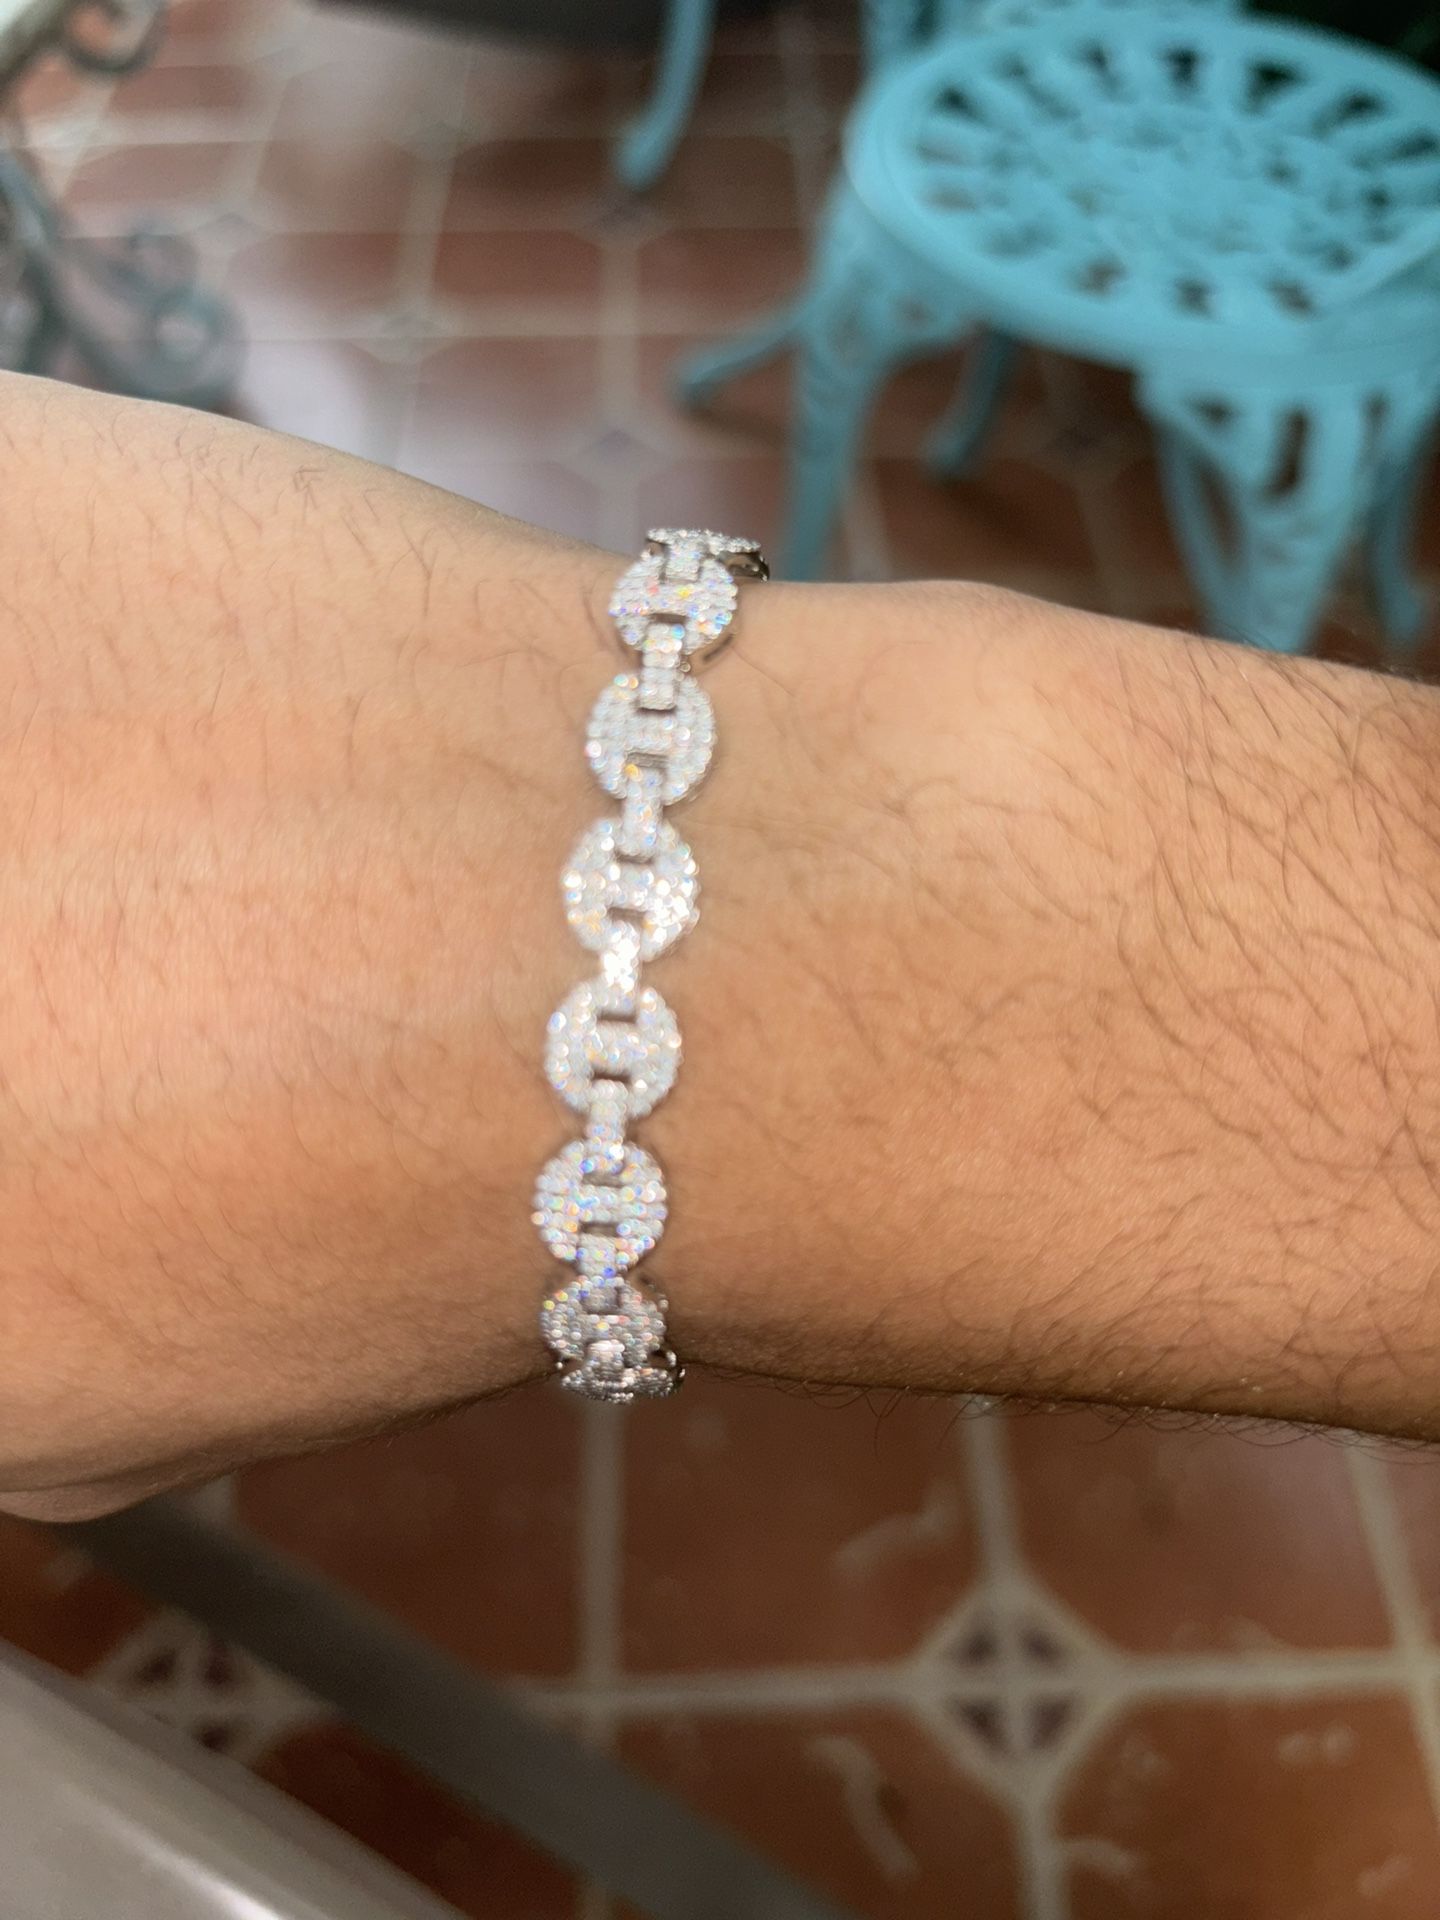 Silver Diamond Test Approved Moissanite Bracelet 